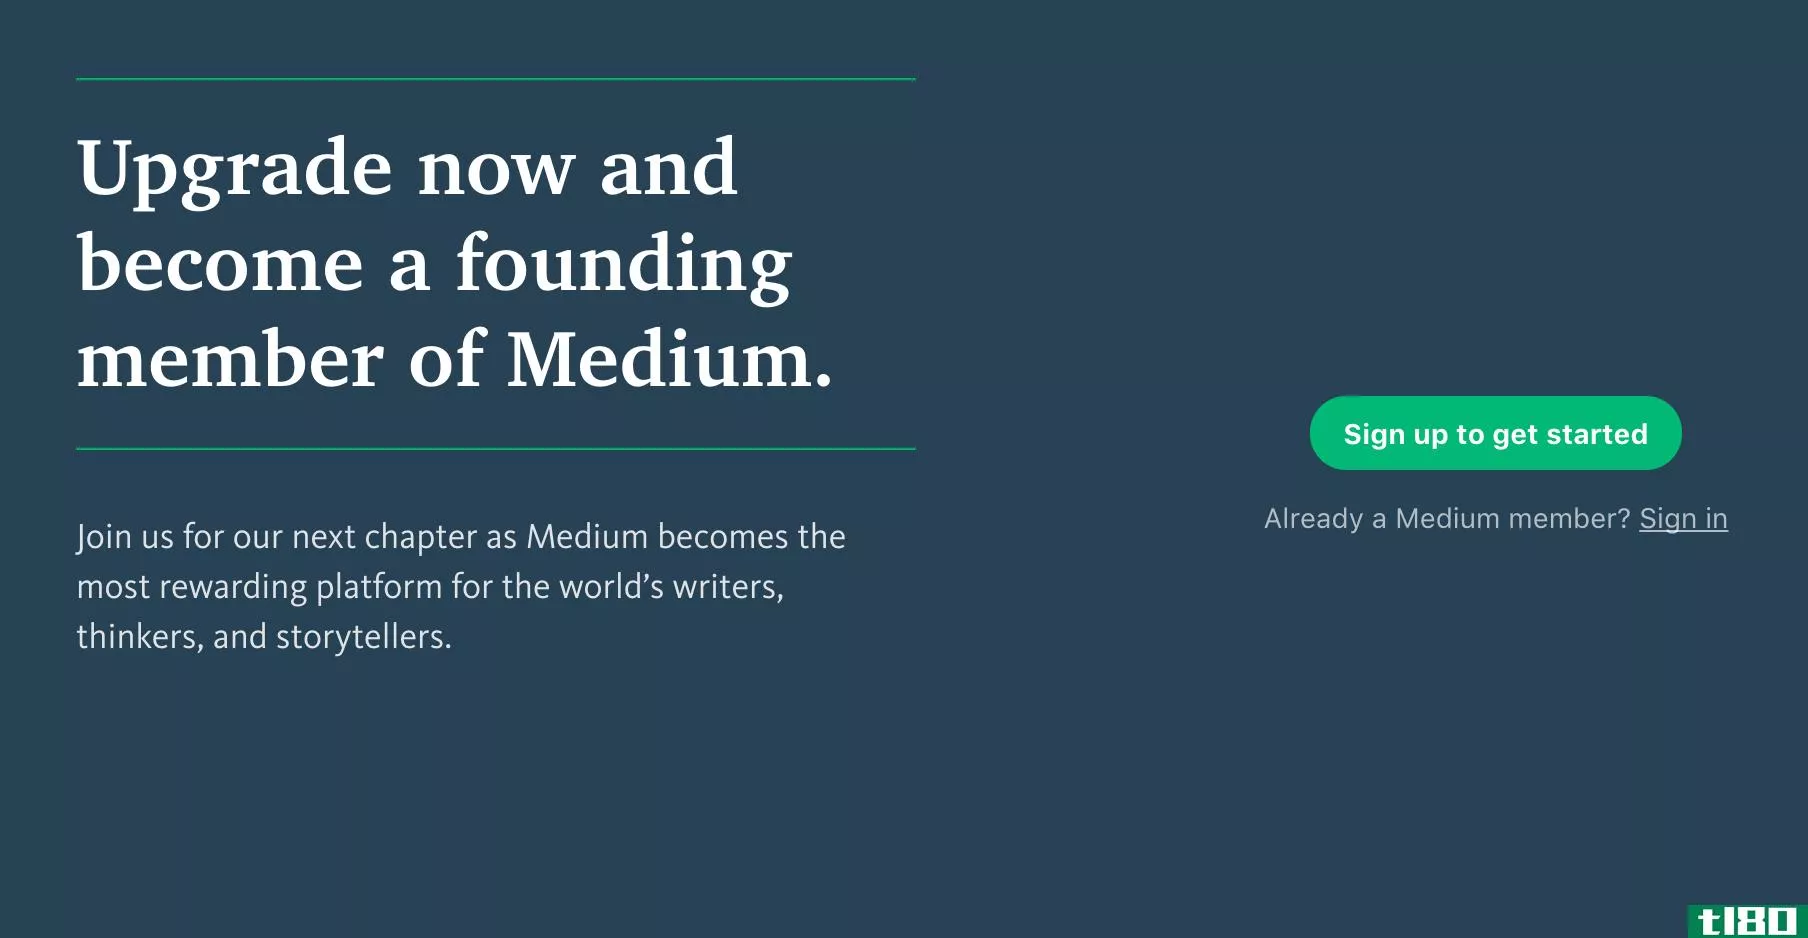 medium推出每月5美元的会员资格